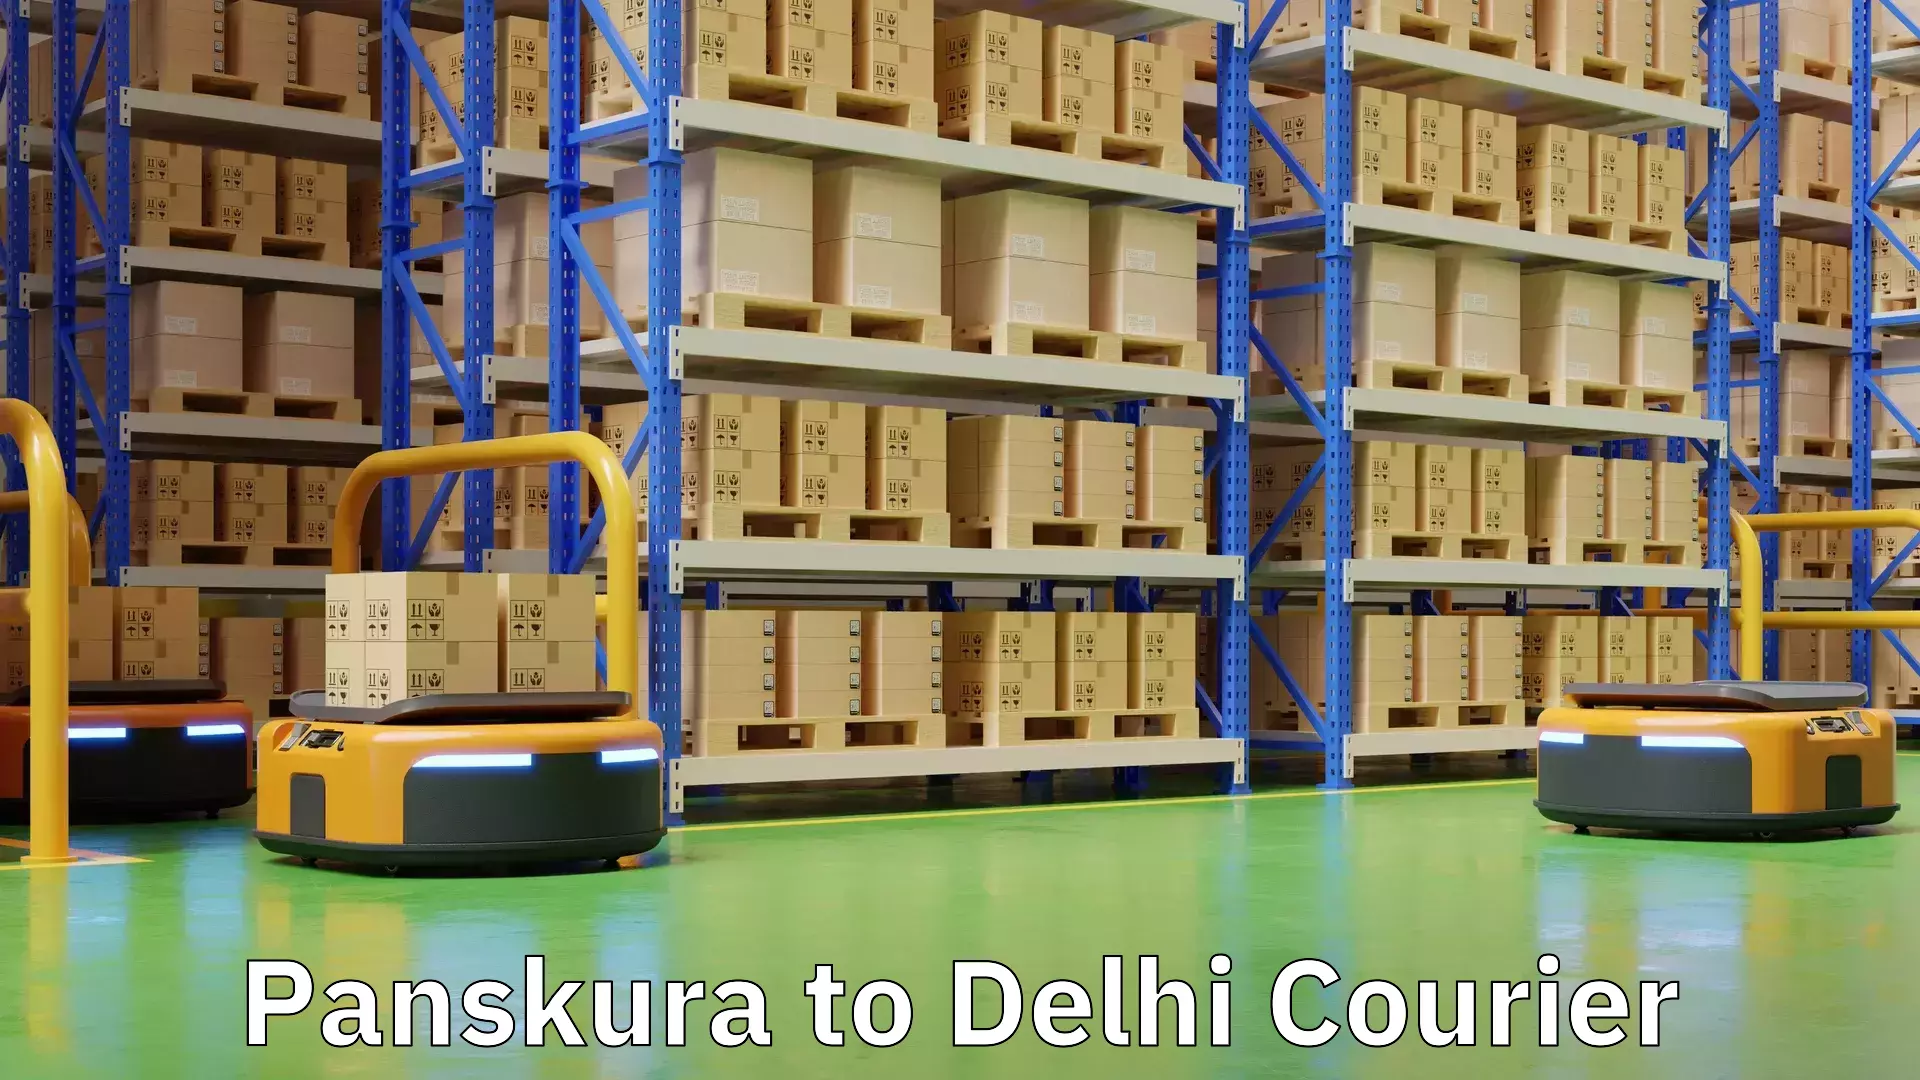 Global courier networks Panskura to Delhi